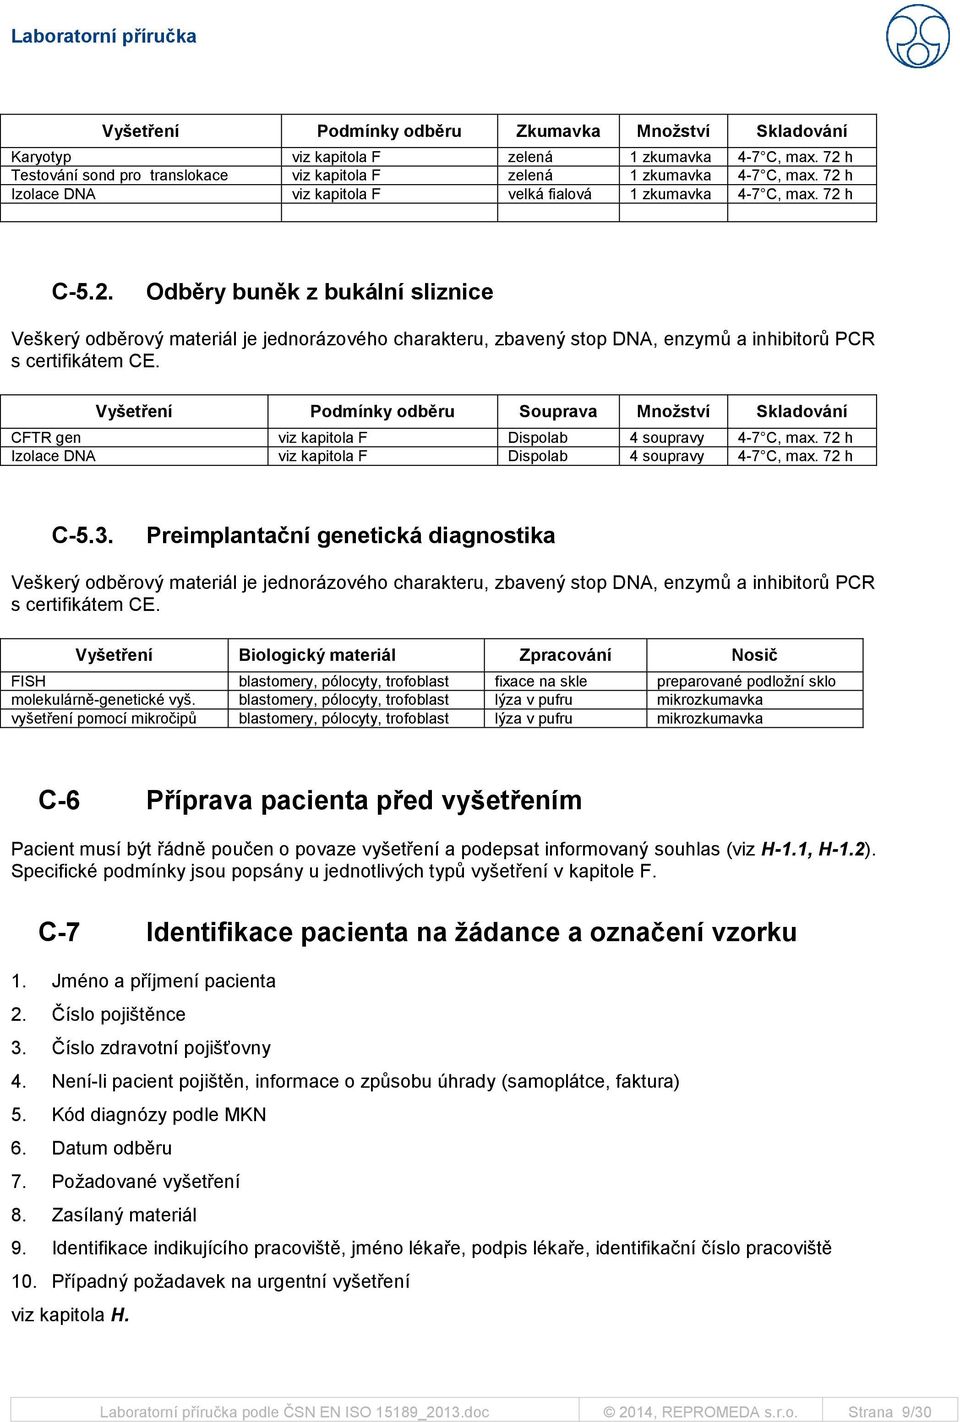 Vyšetření Podmínky odběru Souprava Množství Skladování CFTR gen viz kapitola F Dispolab 4 soupravy 4-7 C, max. 72 h Izolace DNA viz kapitola F Dispolab 4 soupravy 4-7 C, max. 72 h C-5.3.